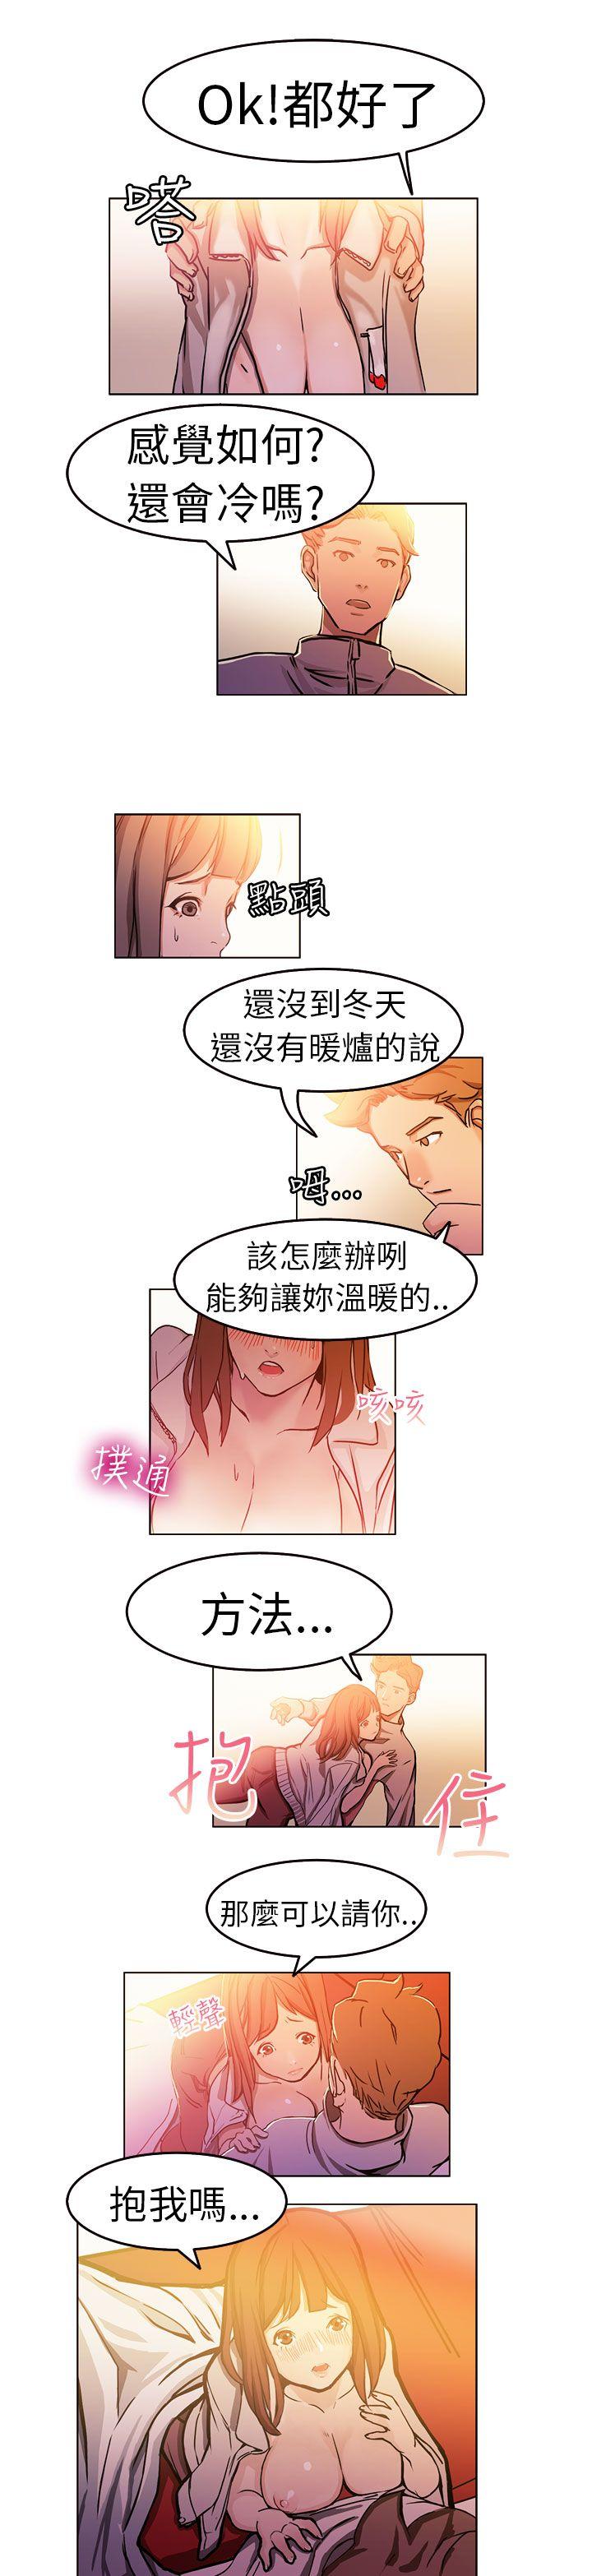 韩国污漫画 派愛達人 施工现场的所长(中) 6